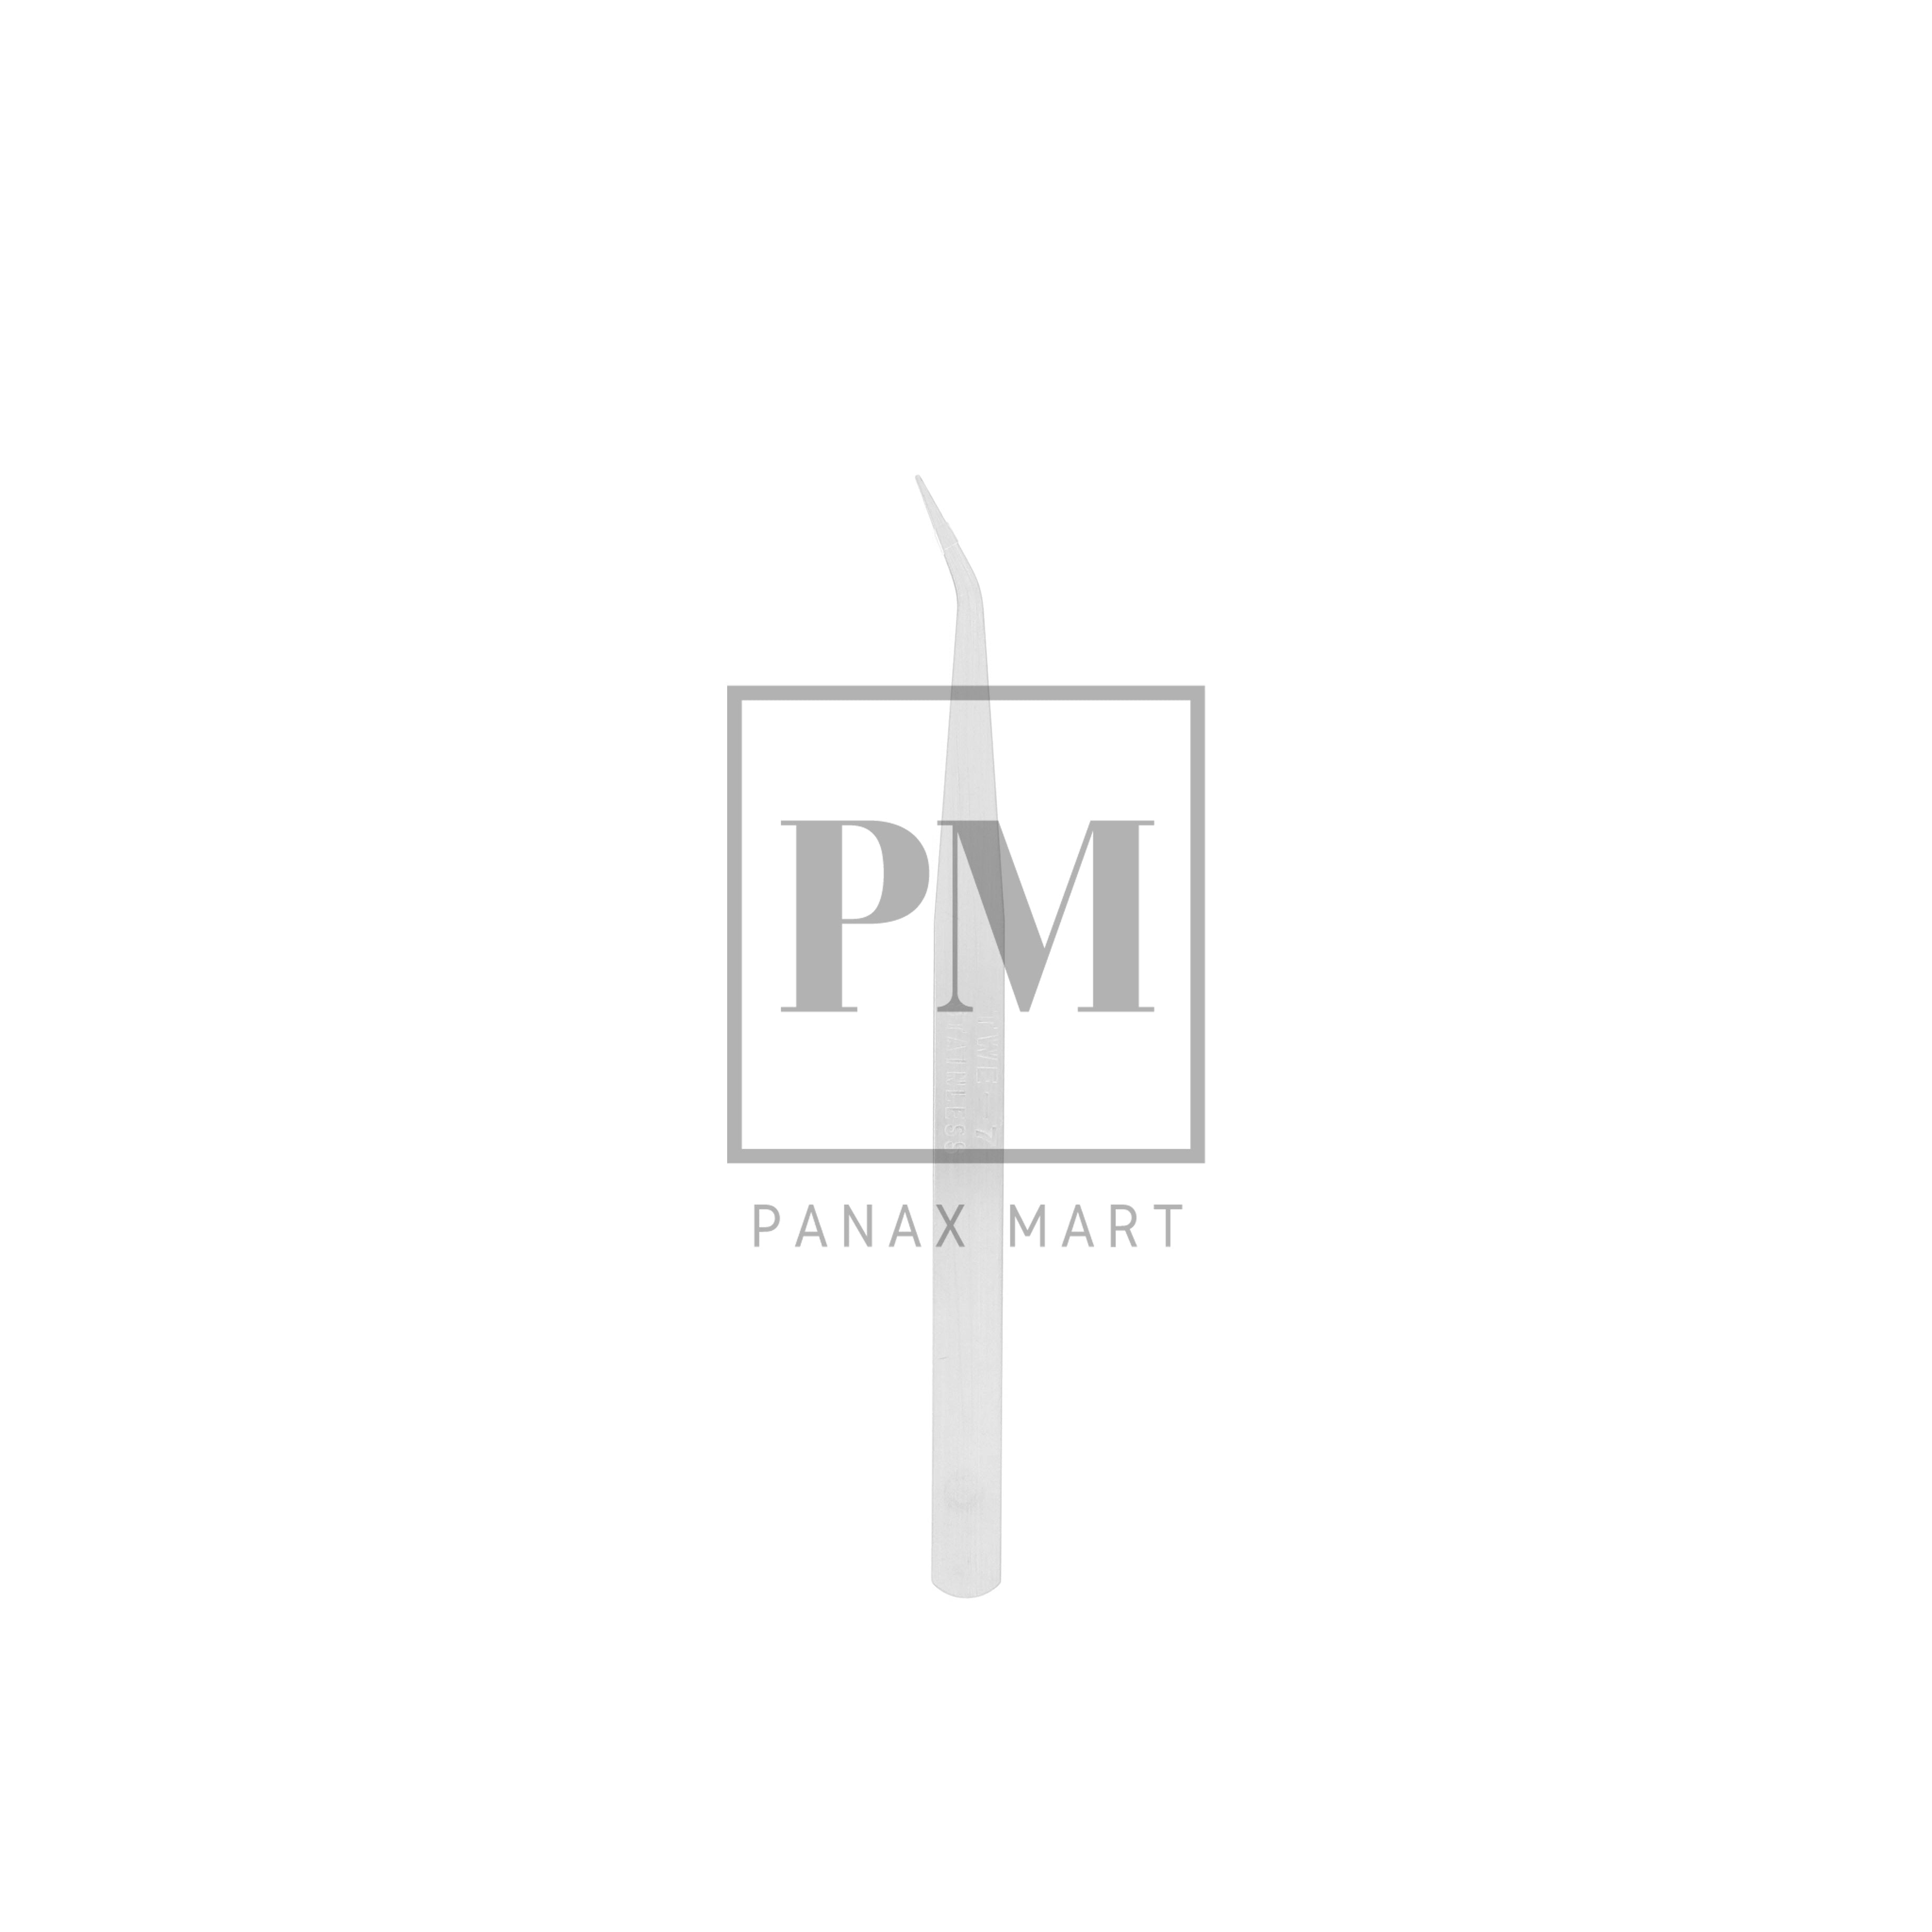 Panax Overlock Tweezer - Panax Mart